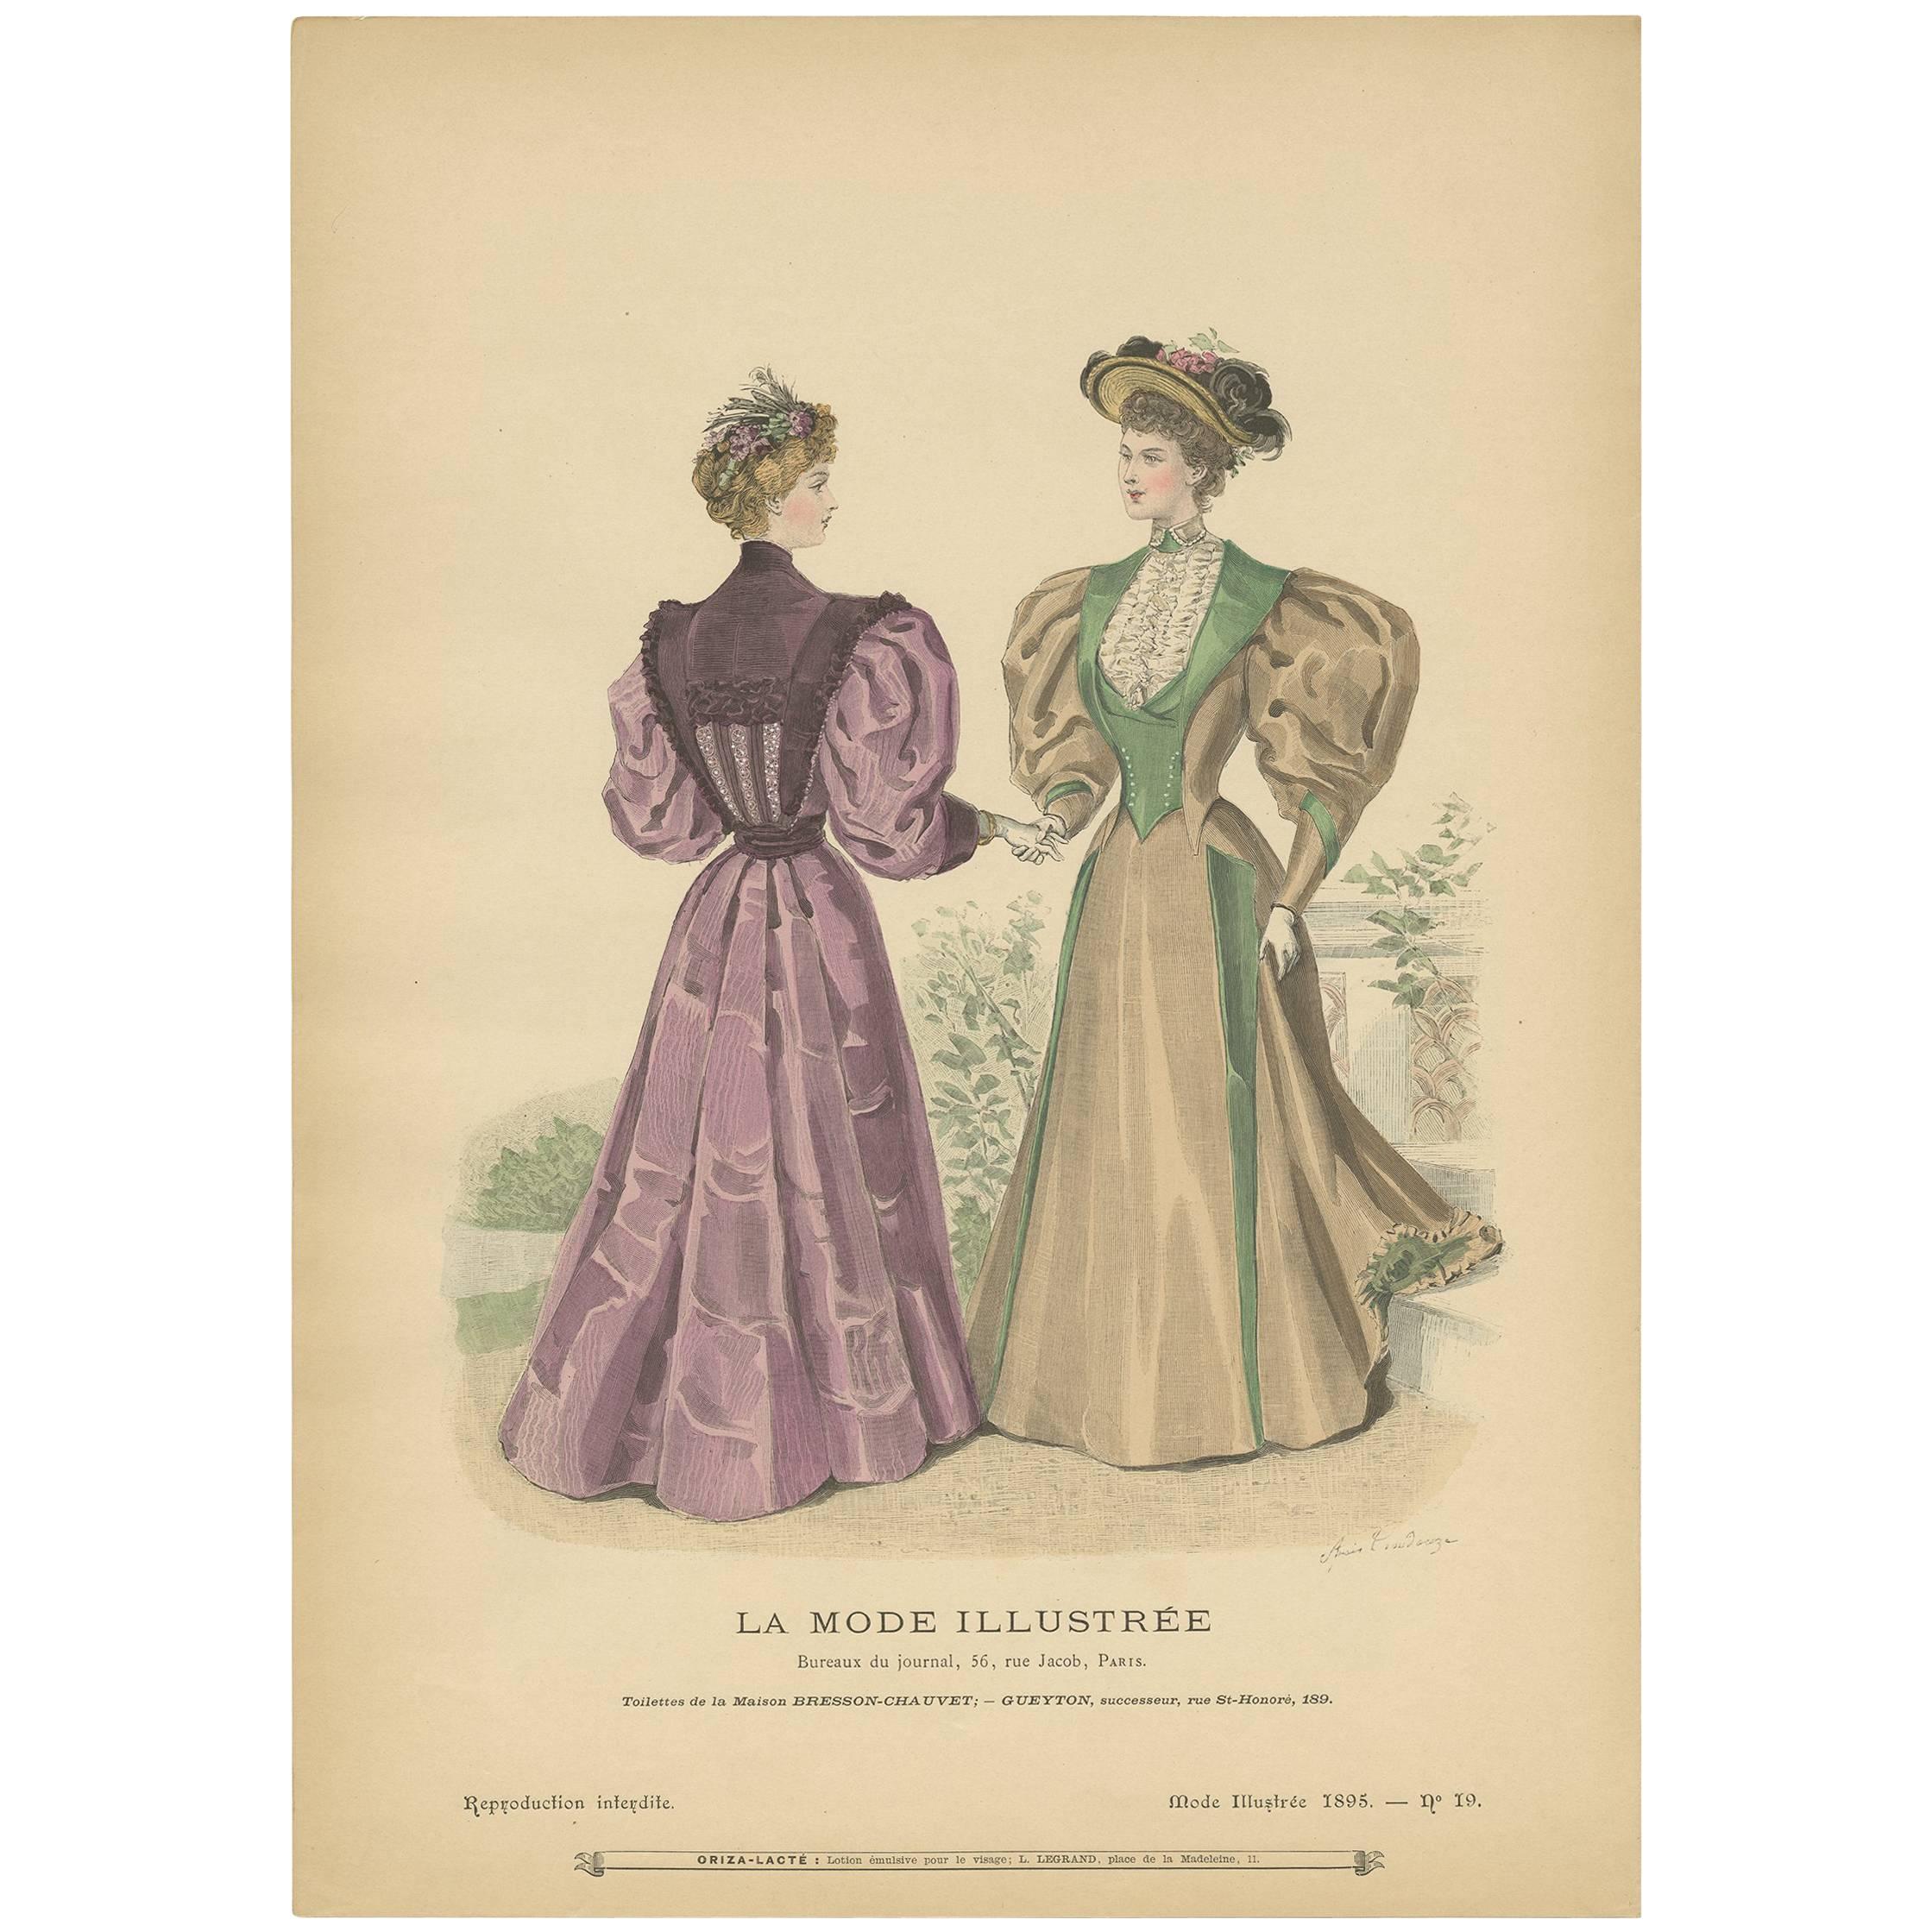 Antique Fashion Print Published by La Mode Illustrée, No. 19, 1895